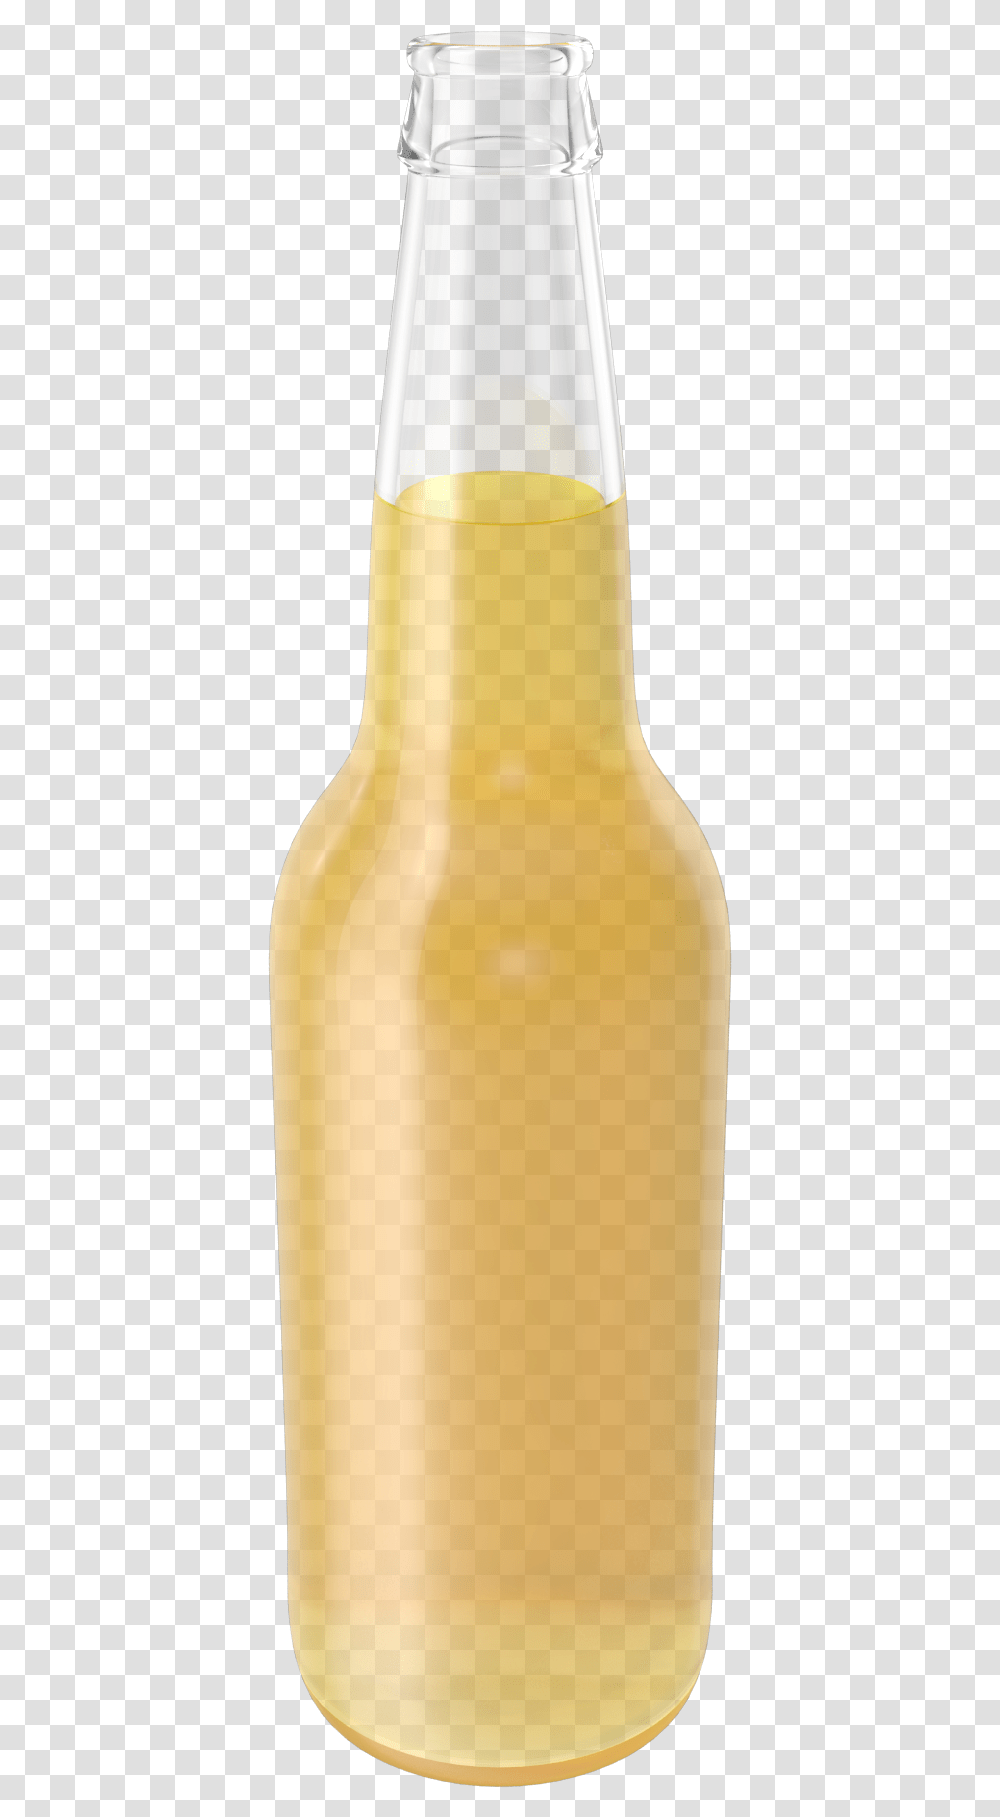 Beer Bottle, Juice, Beverage, Drink, Orange Juice Transparent Png